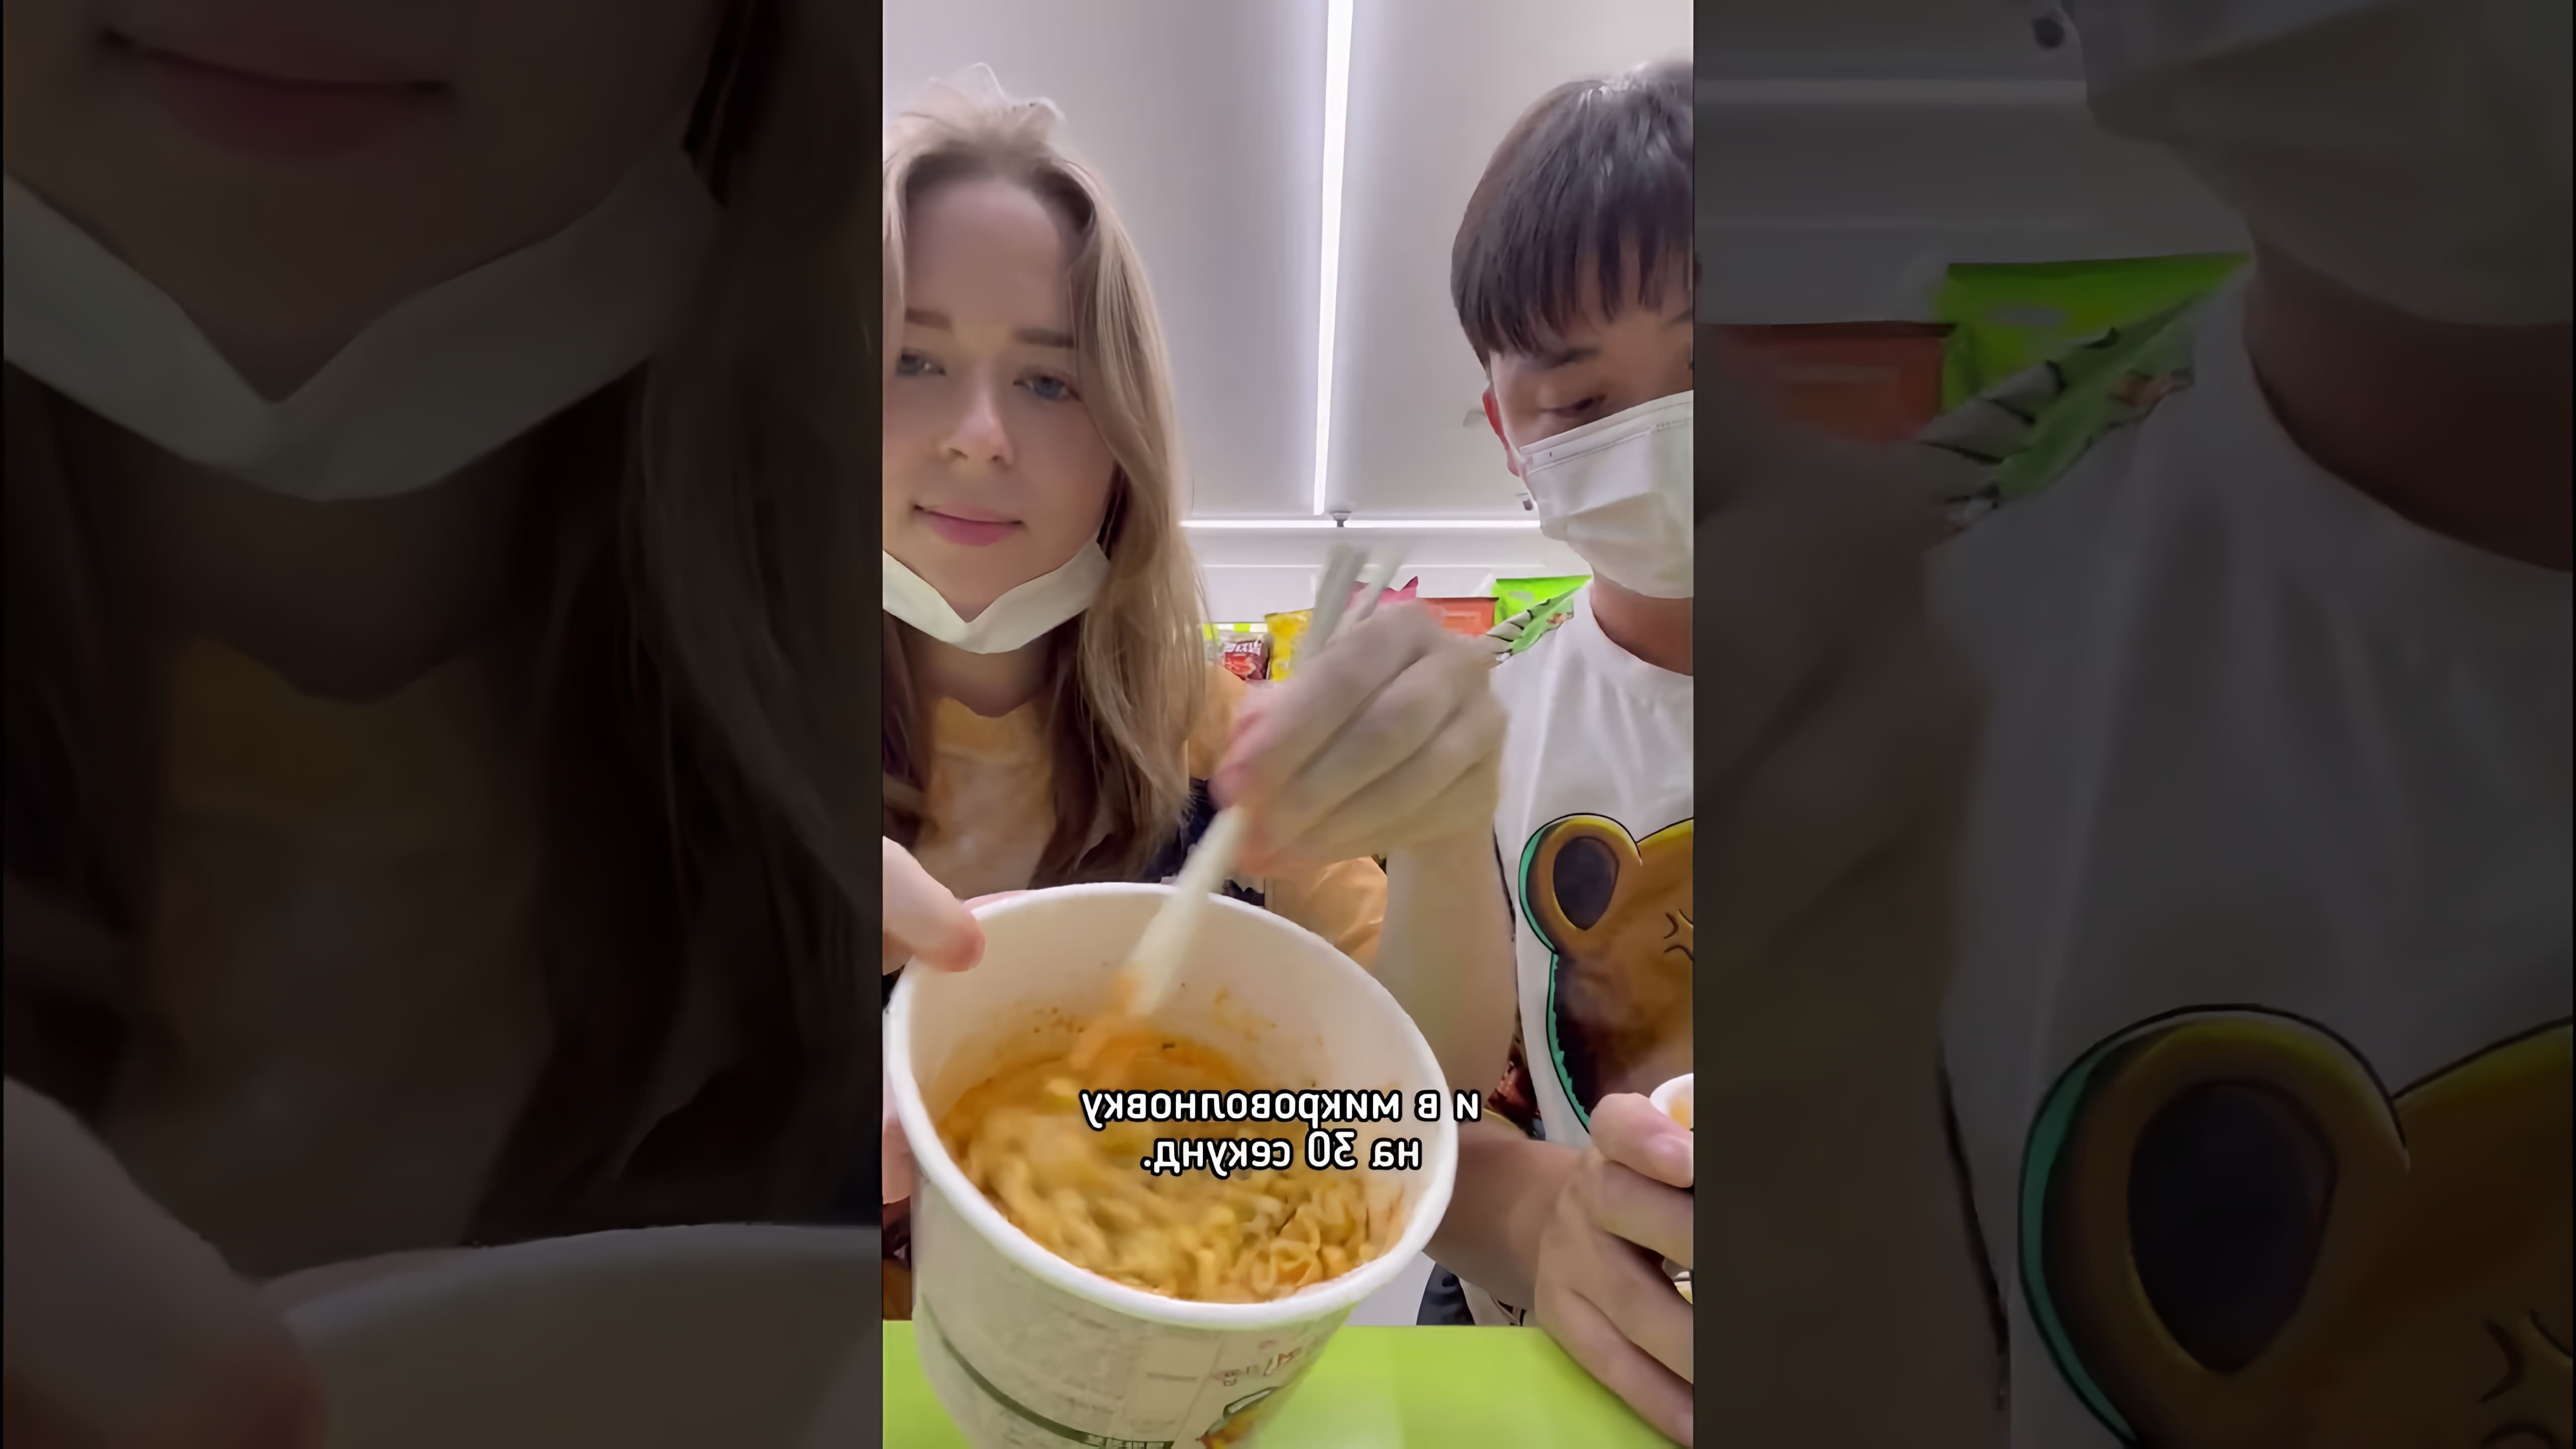 В этом видео мы видим, как пара готовит рамён карбонара в Корее